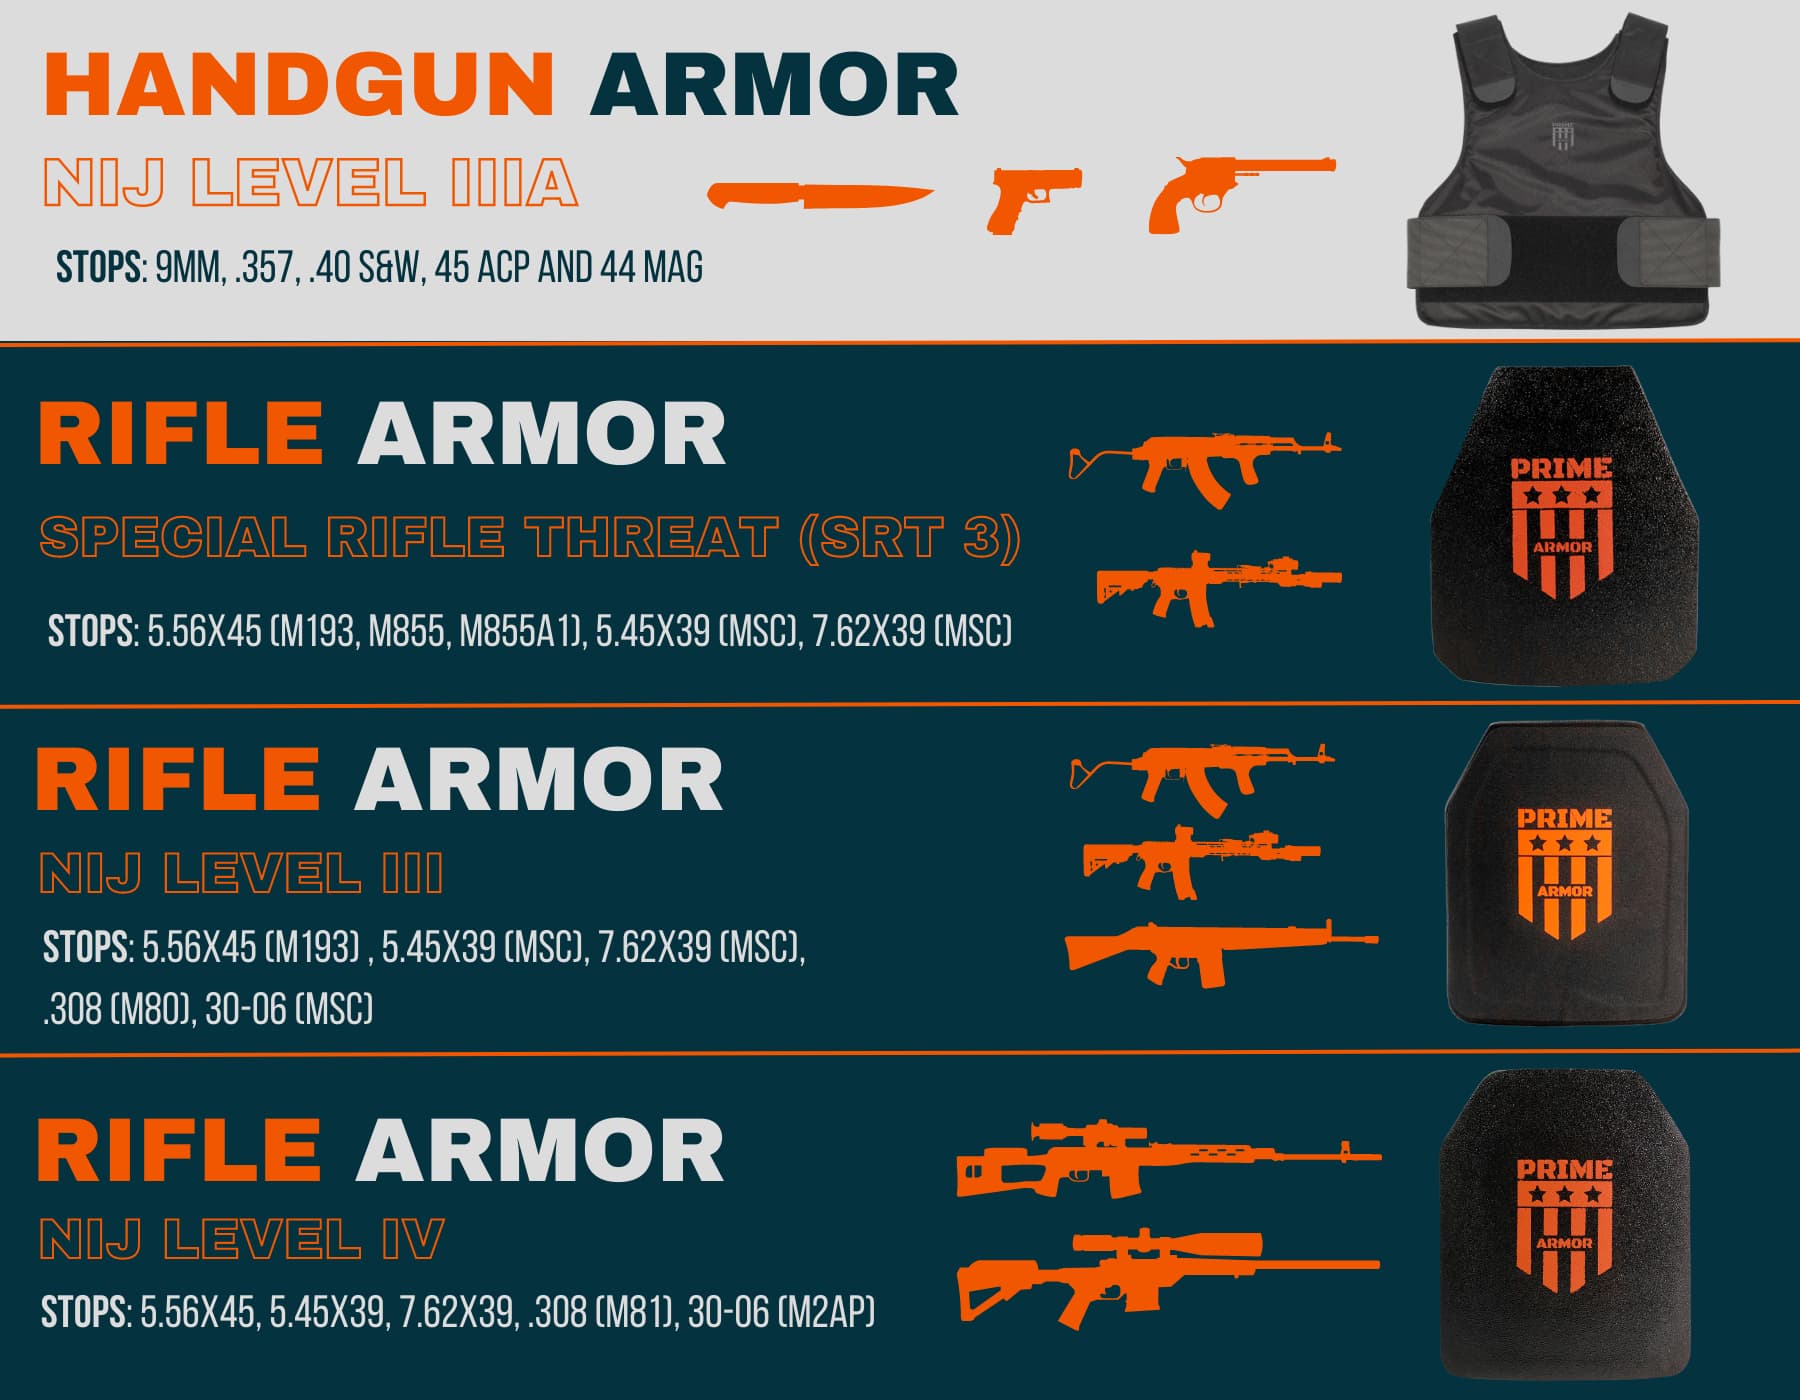 Armor rating Rifle Armor